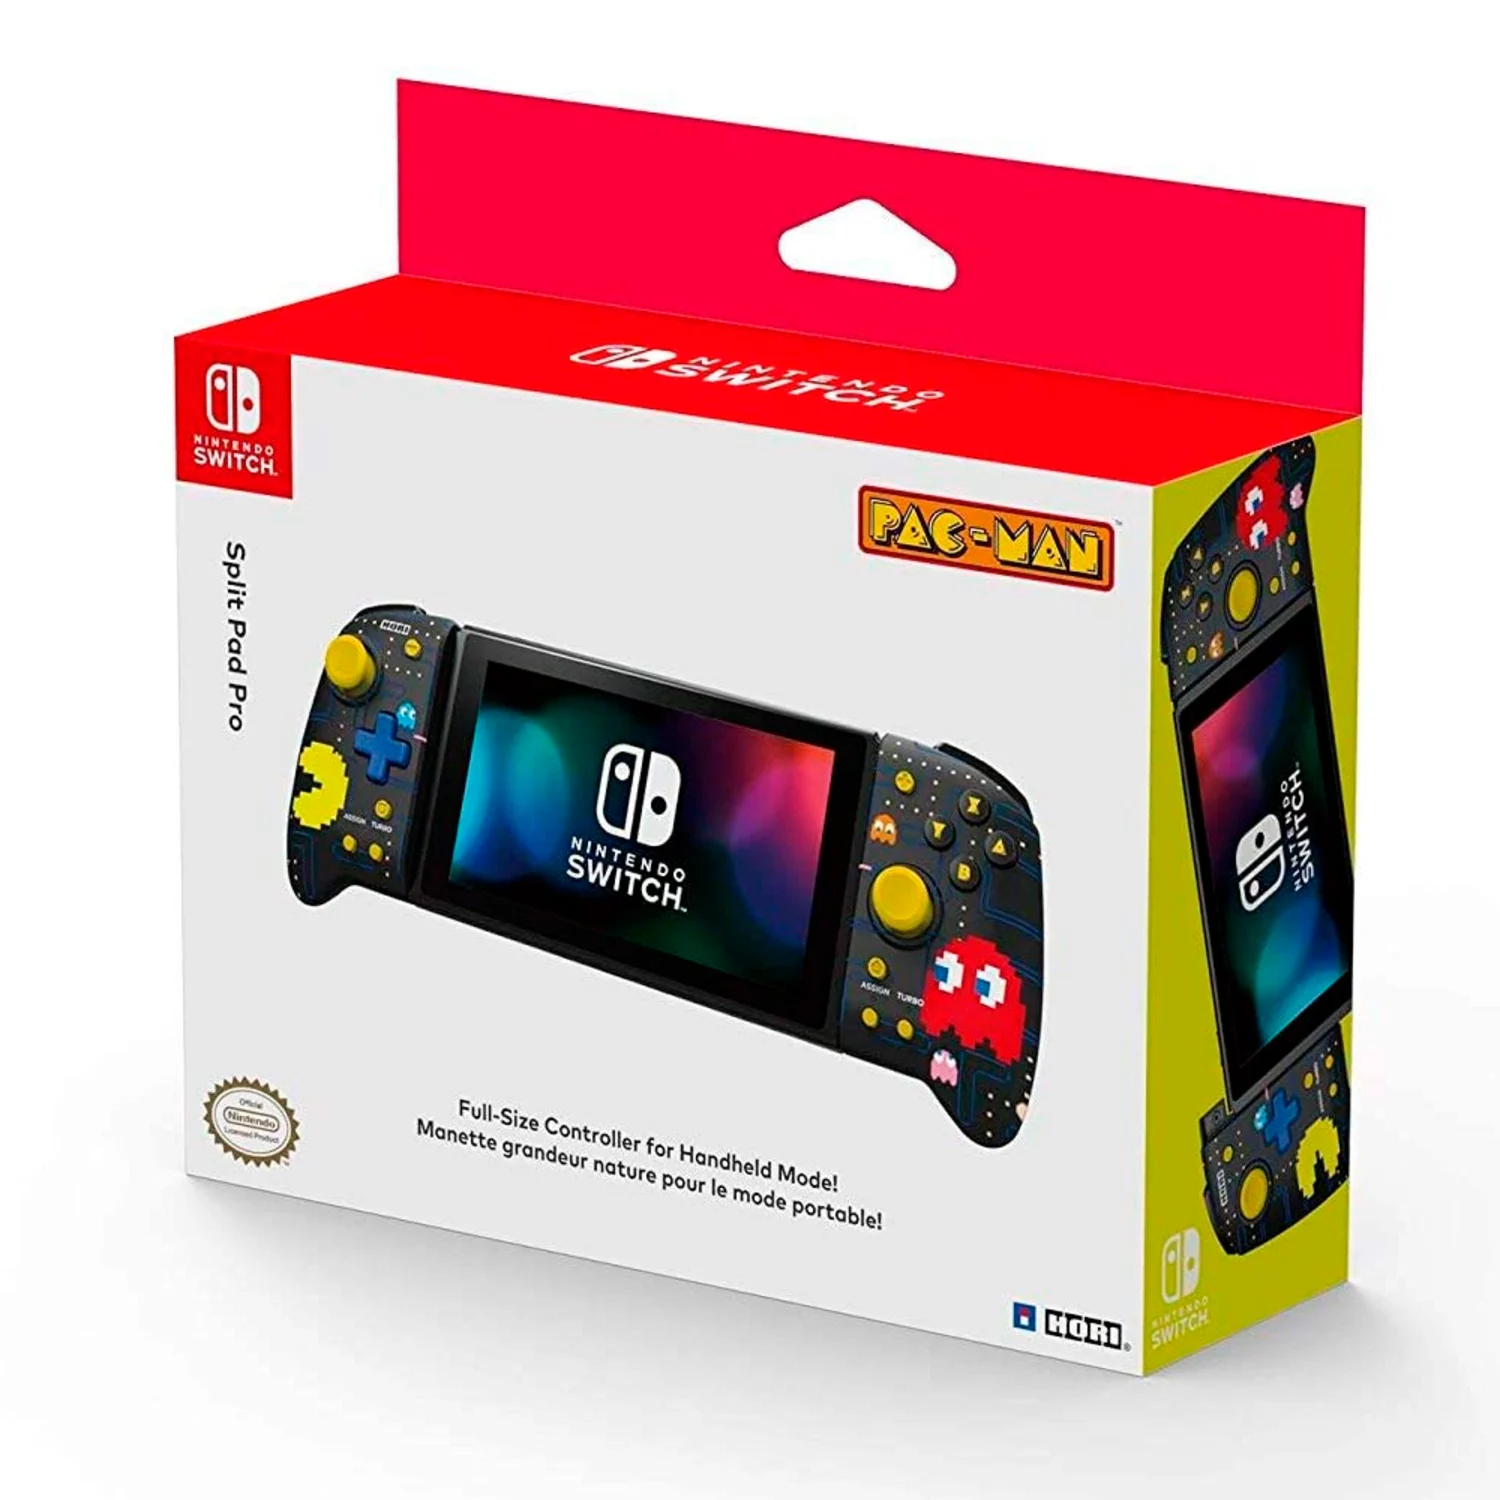 Split PAD PRO Hori para Nintendo Switch - Pacman (NSW-302U)